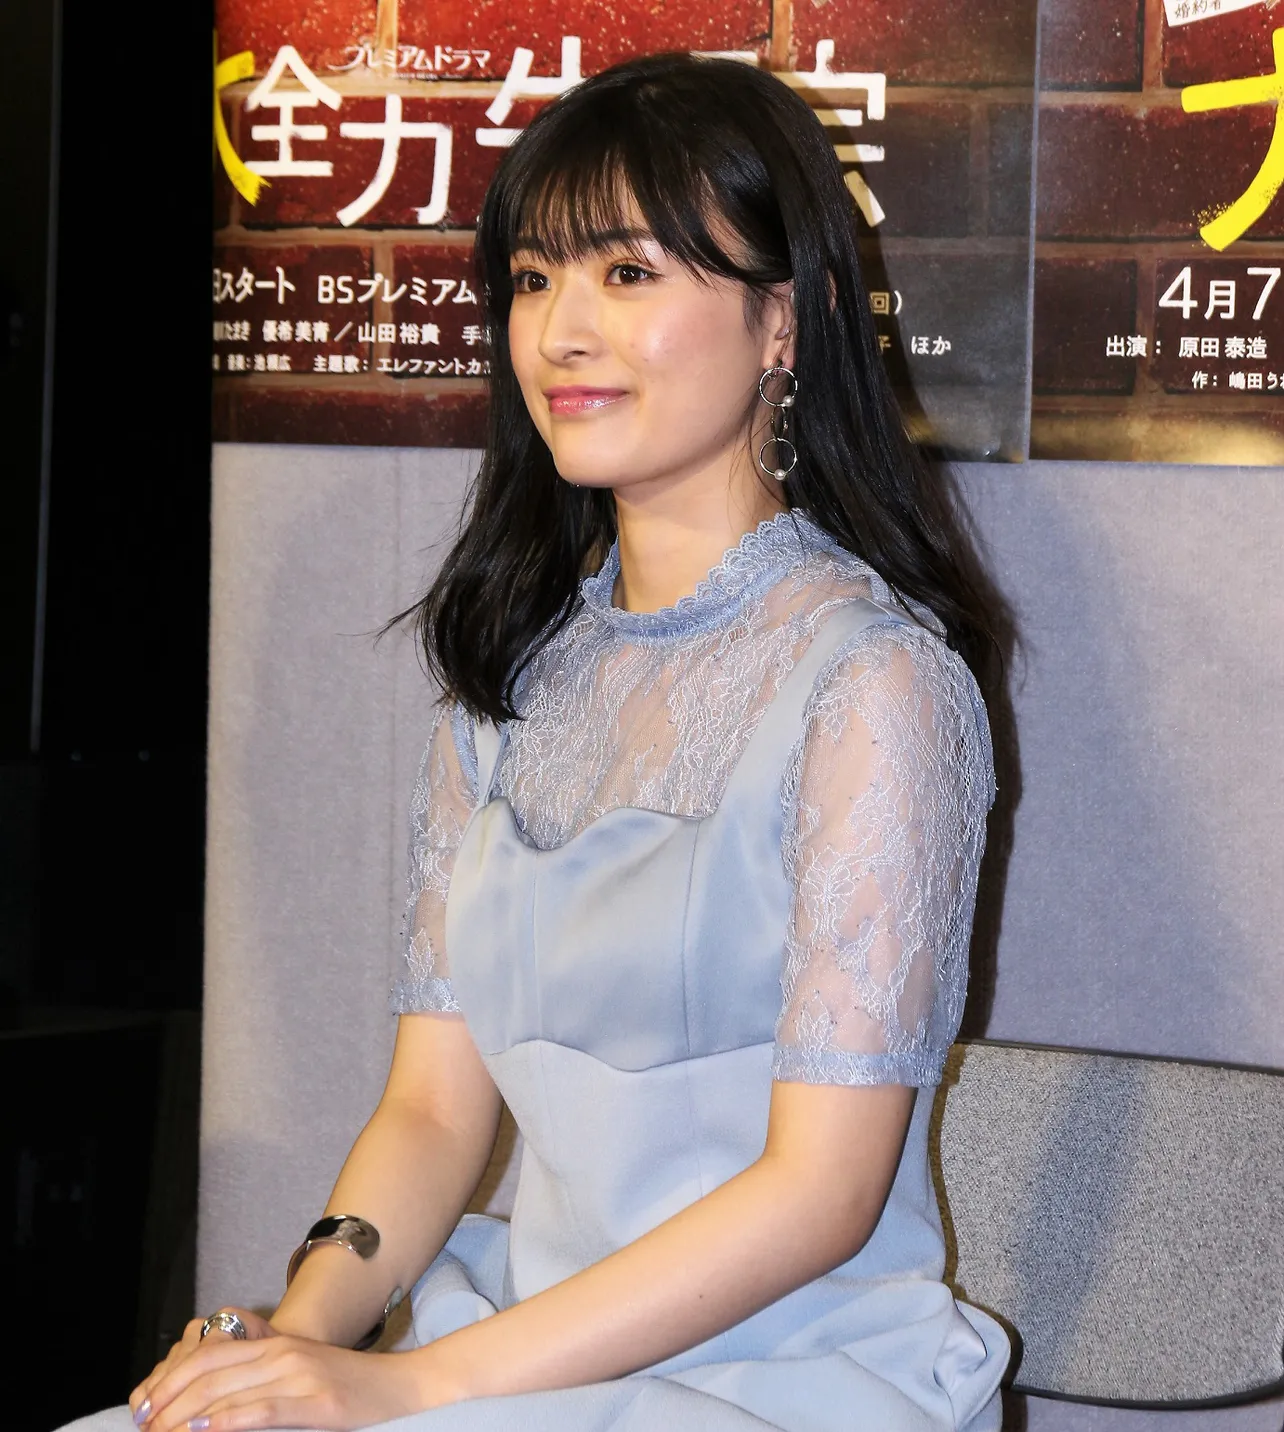 前作では最終回のみの出演だった優希美青は、「続編に出演できてうれしい」と話す